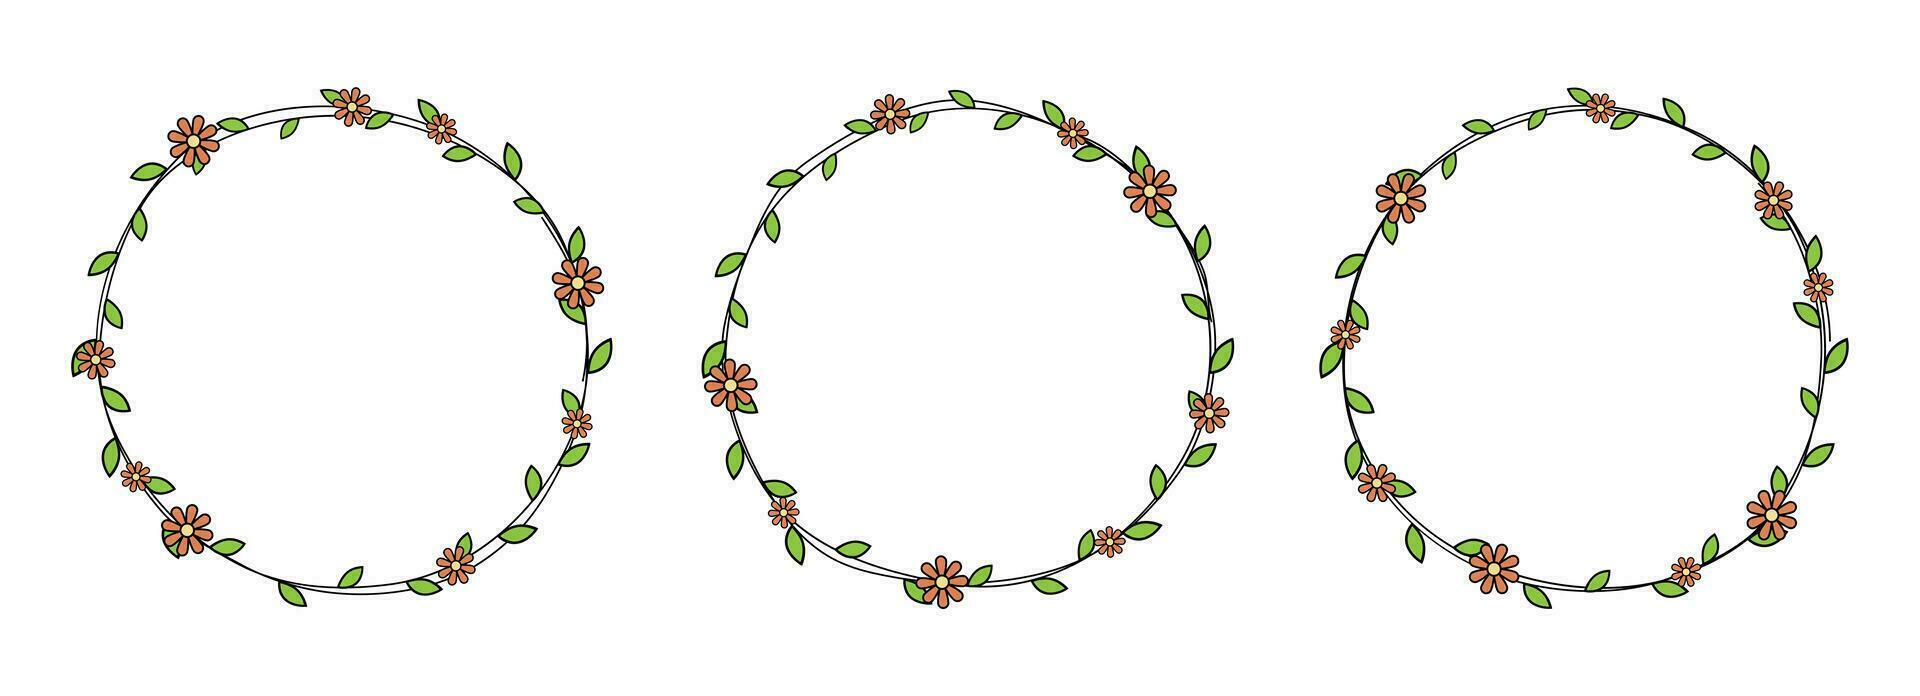 mano dibujado circulo marco decoración elemento con hojas y flores acortar Arte vector